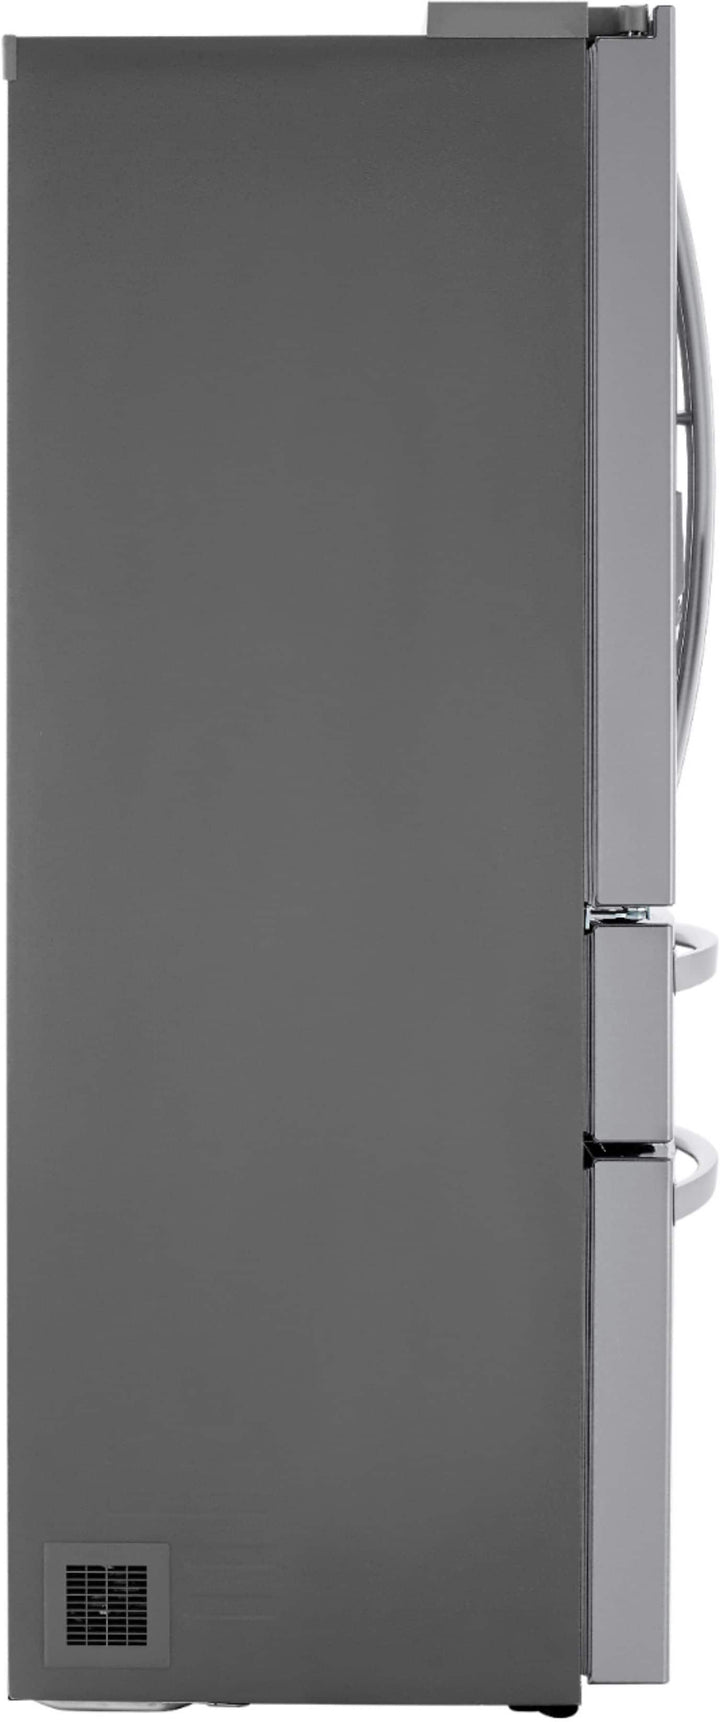 LG - 22.5 Cu. Ft. 4-Door French Door Counter-Depth Refrigerator with Door-in-Door and Craft Ice - Stainless steel_5